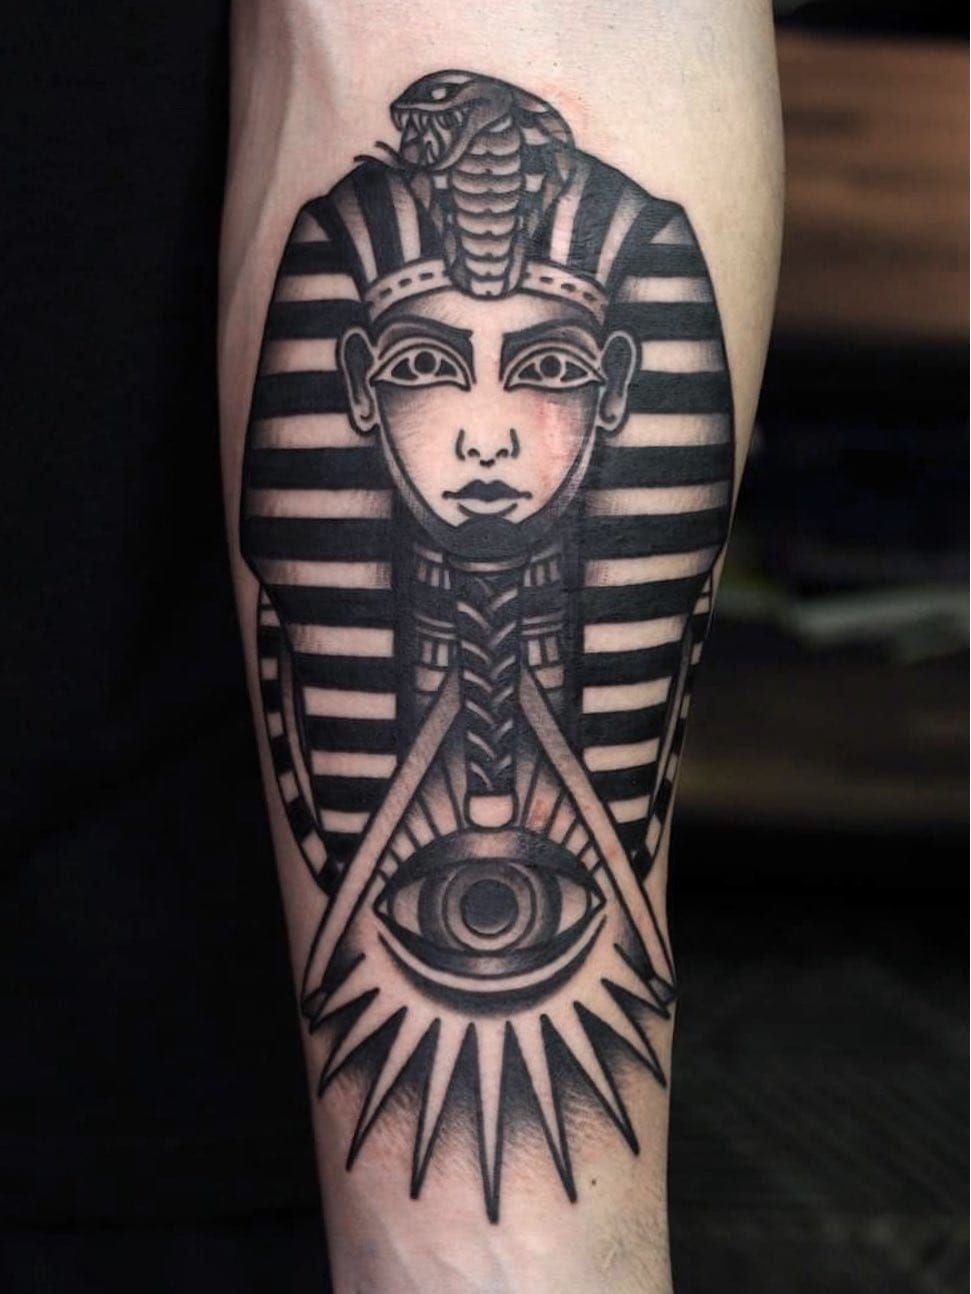 Eye of Horus Tattoo #tattoo #tatts #tatted #tattoos #eyeofhorus  #eyeofhorustattoo #egypt #egyptian #eyetattoo #femaletattooartist #tatto...  | Instagram